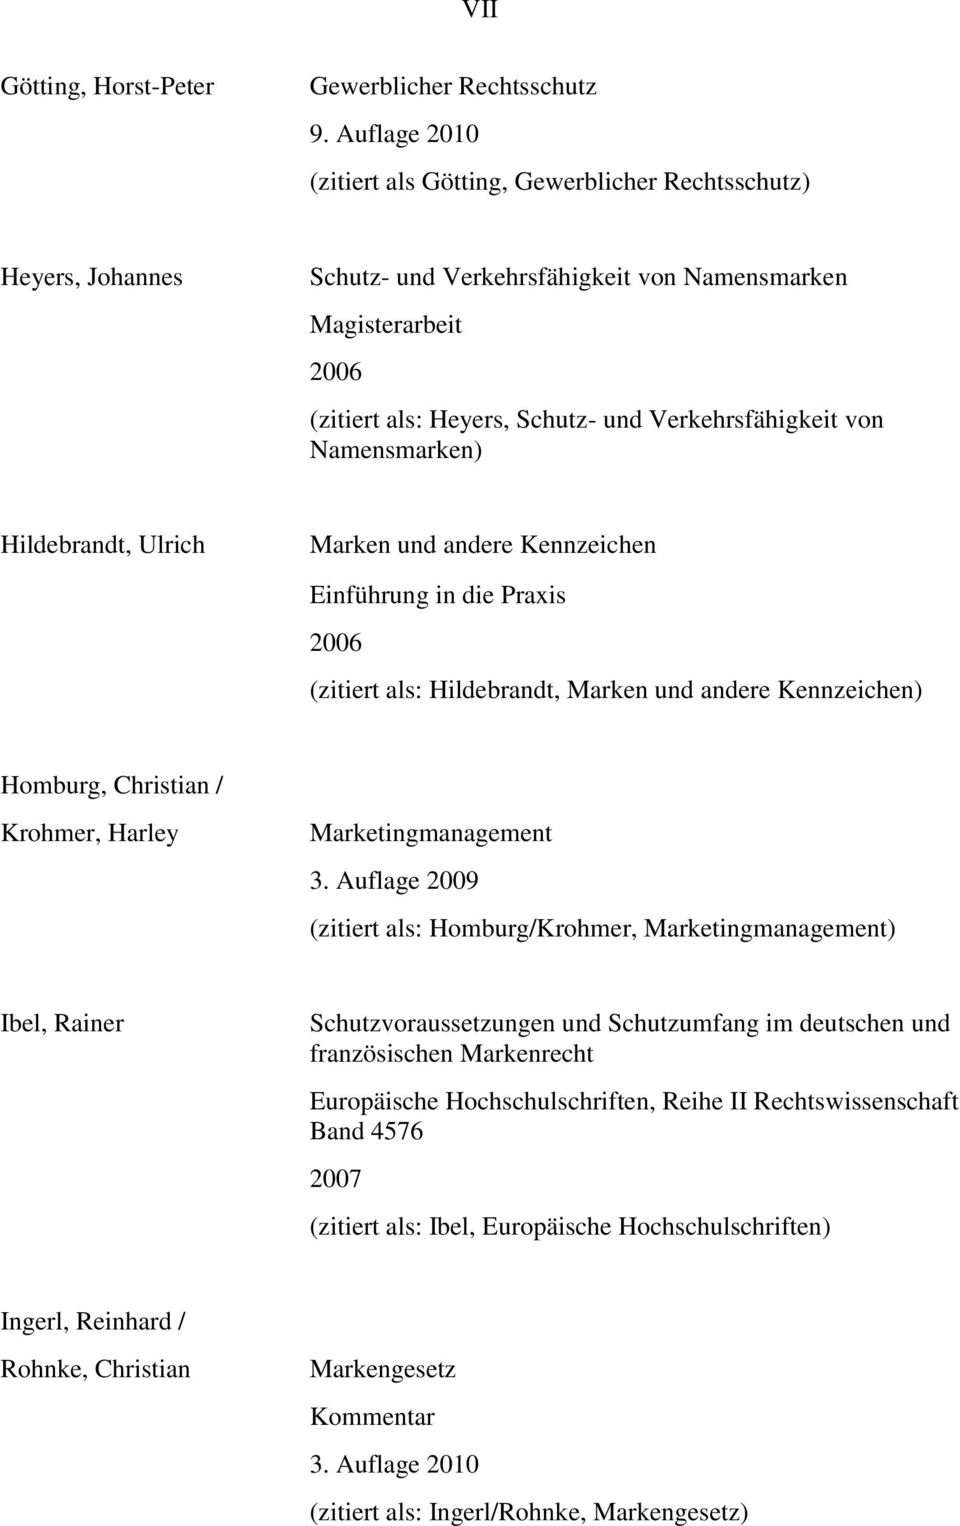 von Namensmarken) Hildebrandt, Ulrich Marken und andere Kennzeichen Einführung in die Praxis 2006 (zitiert als: Hildebrandt, Marken und andere Kennzeichen) Homburg, Christian / Krohmer, Harley